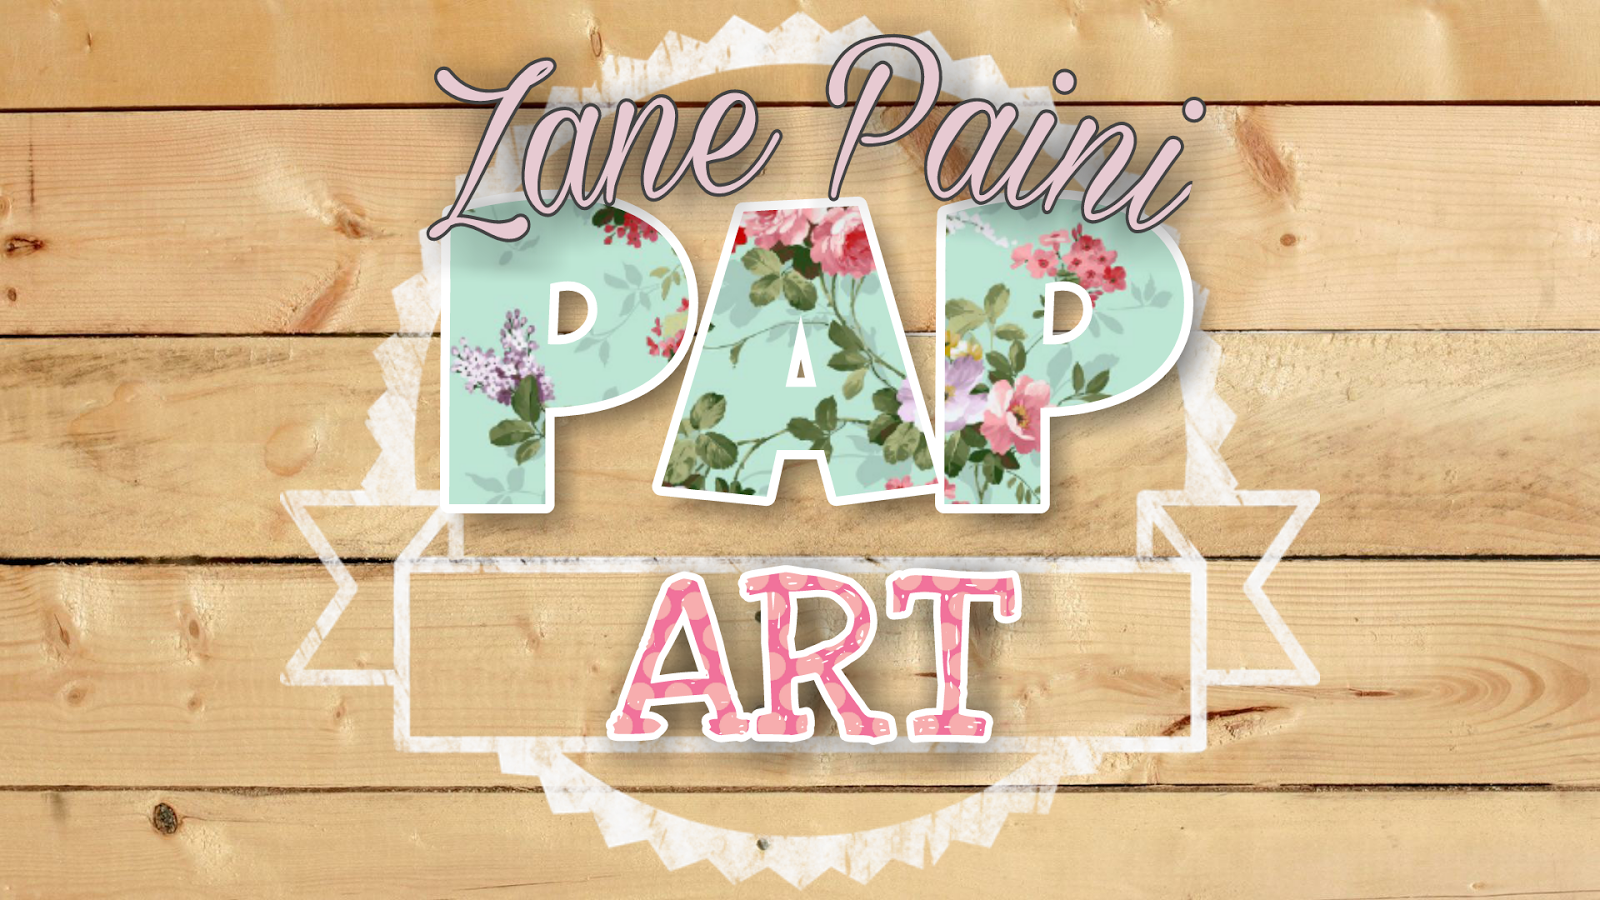 Zane Paini �� PAP ART